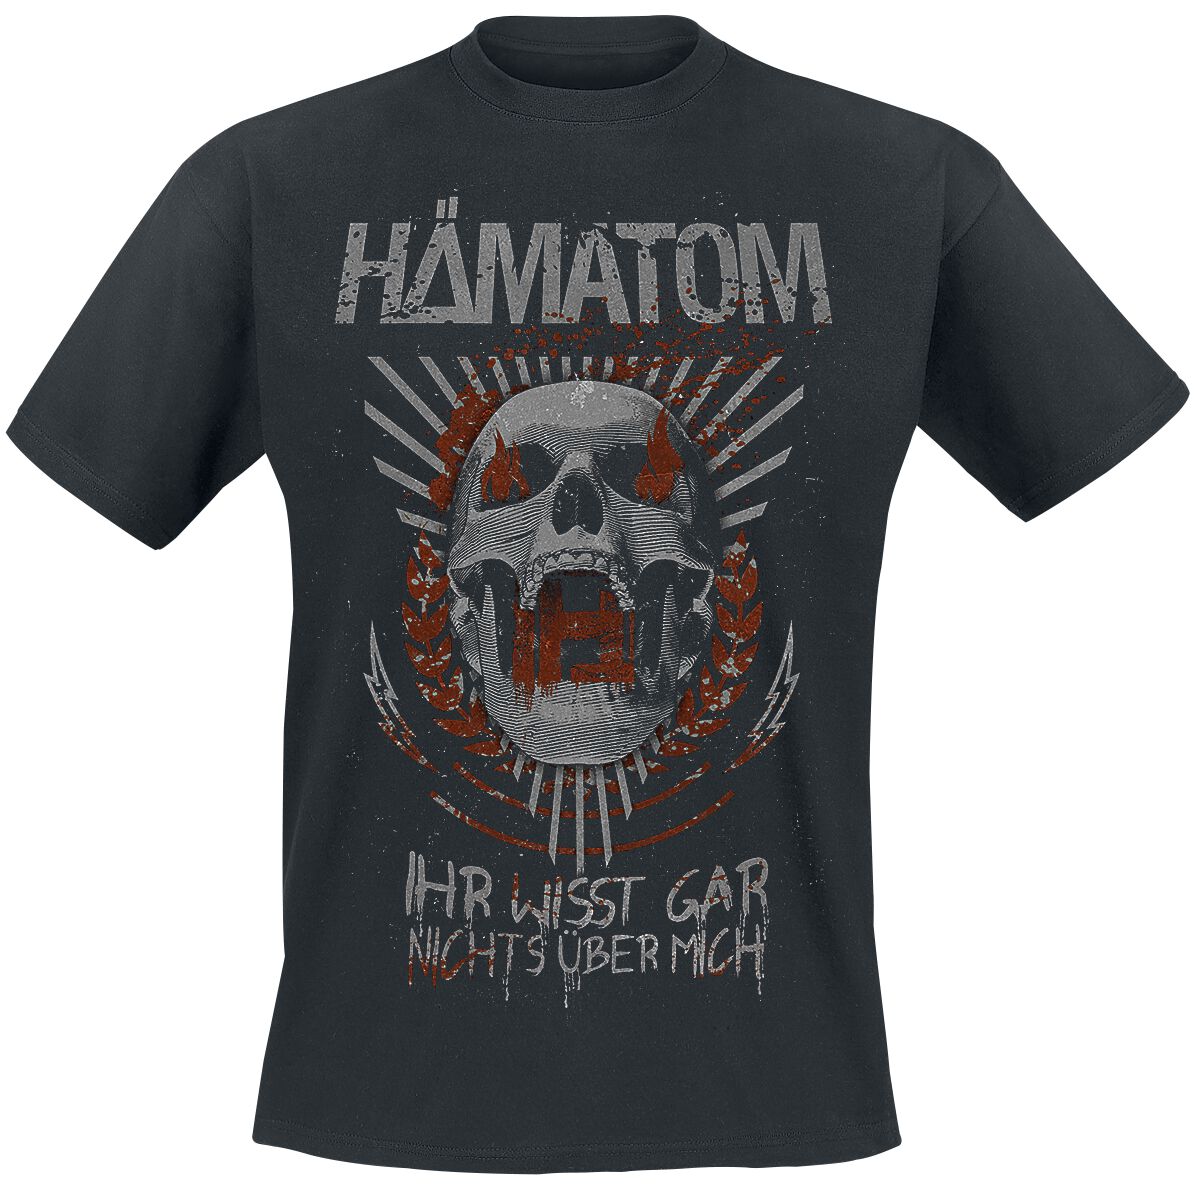 Hämatom T-Shirt - Ihr wisst gar nichts über mich - S bis 5XL - für Männer - Größe XXL - schwarz  - Lizenziertes Merchandise!